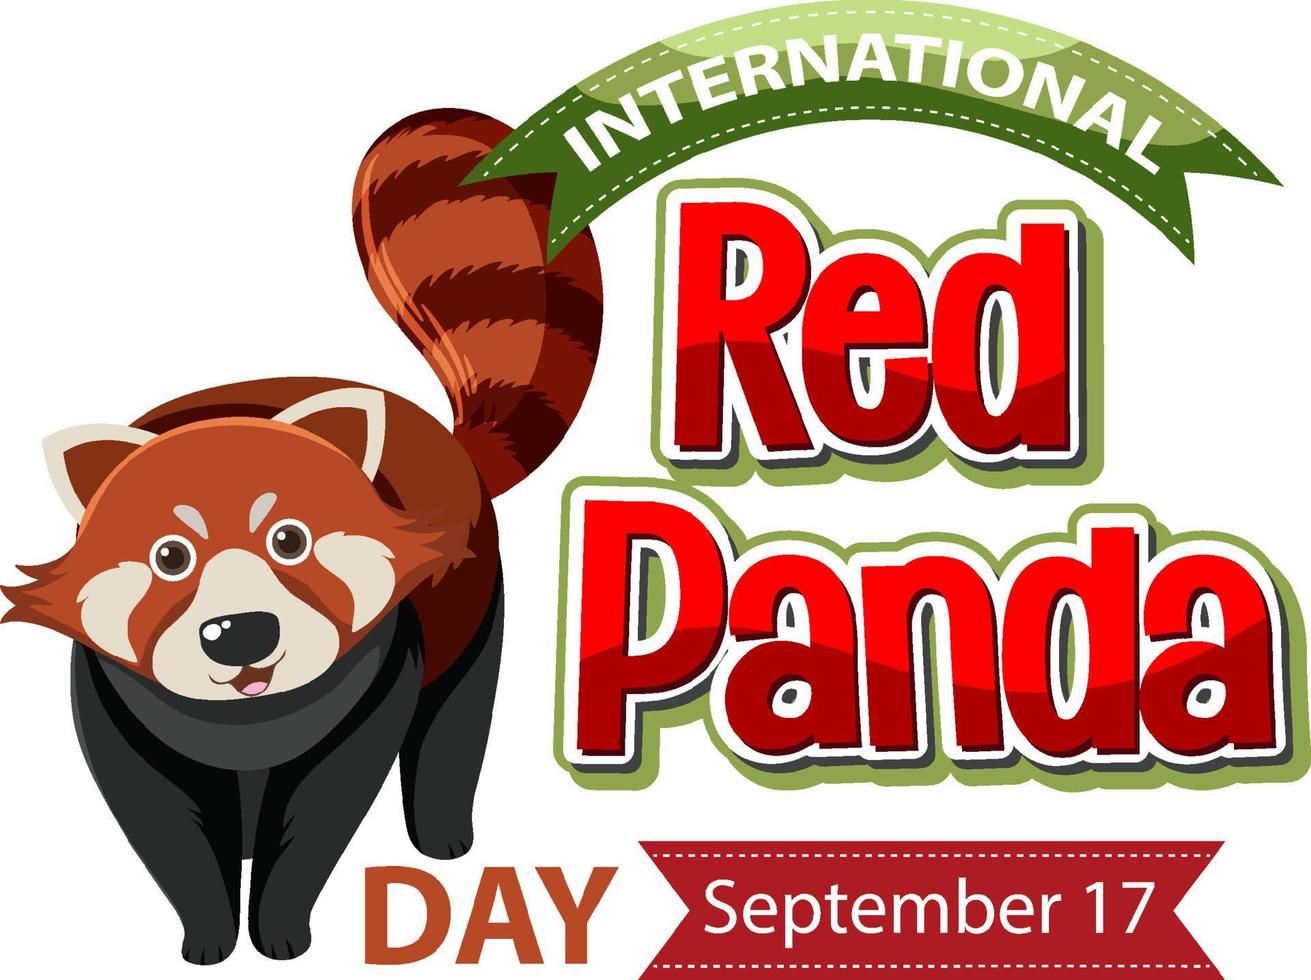 día internacional del panda rojo el 17 de septiembre vector